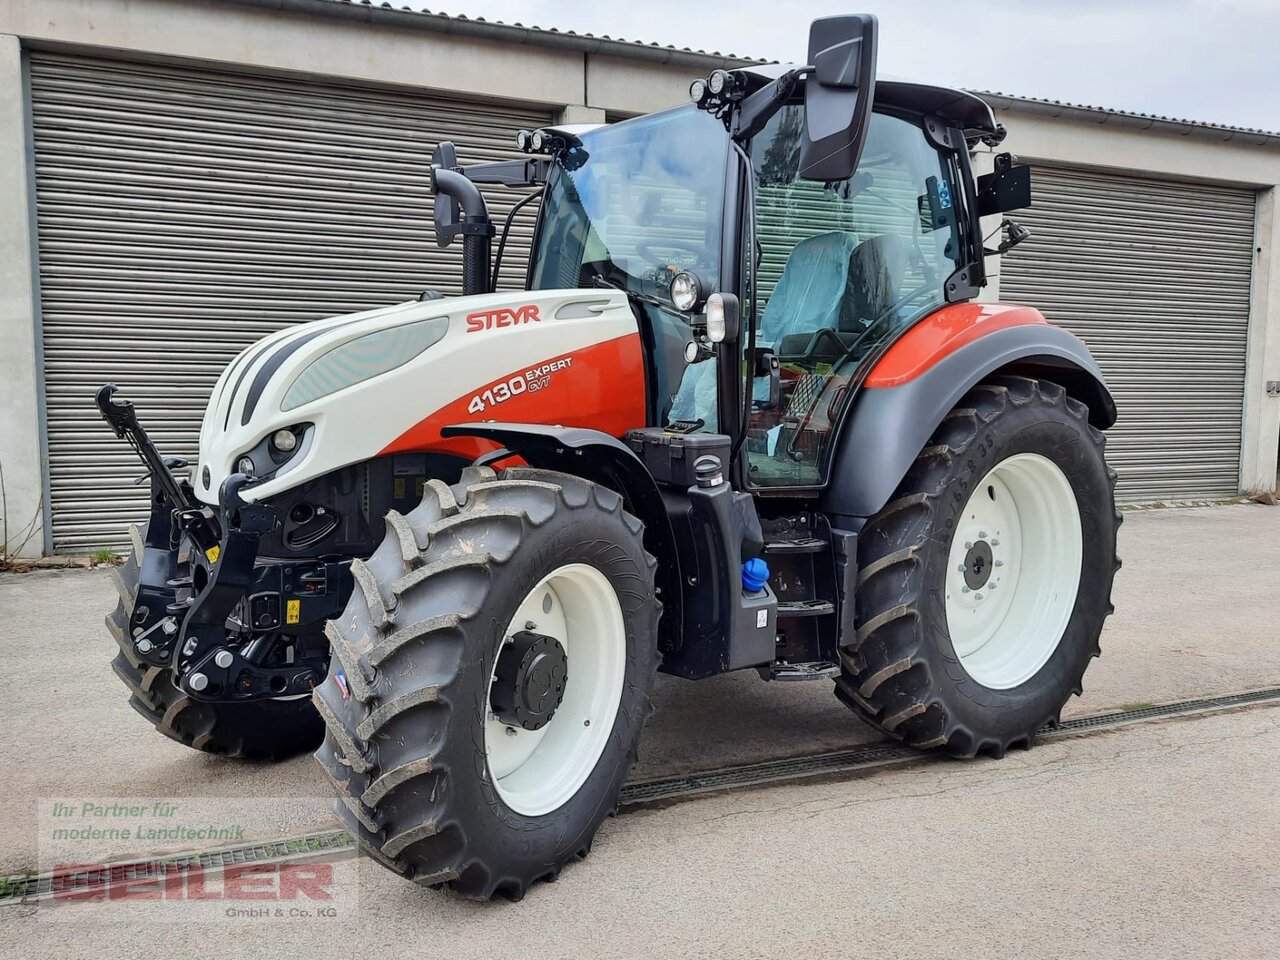 Steyr profi cvt 4130 Traktor, 2016 kaufen bei Truck1 Liechtenstein, ID:  5268266